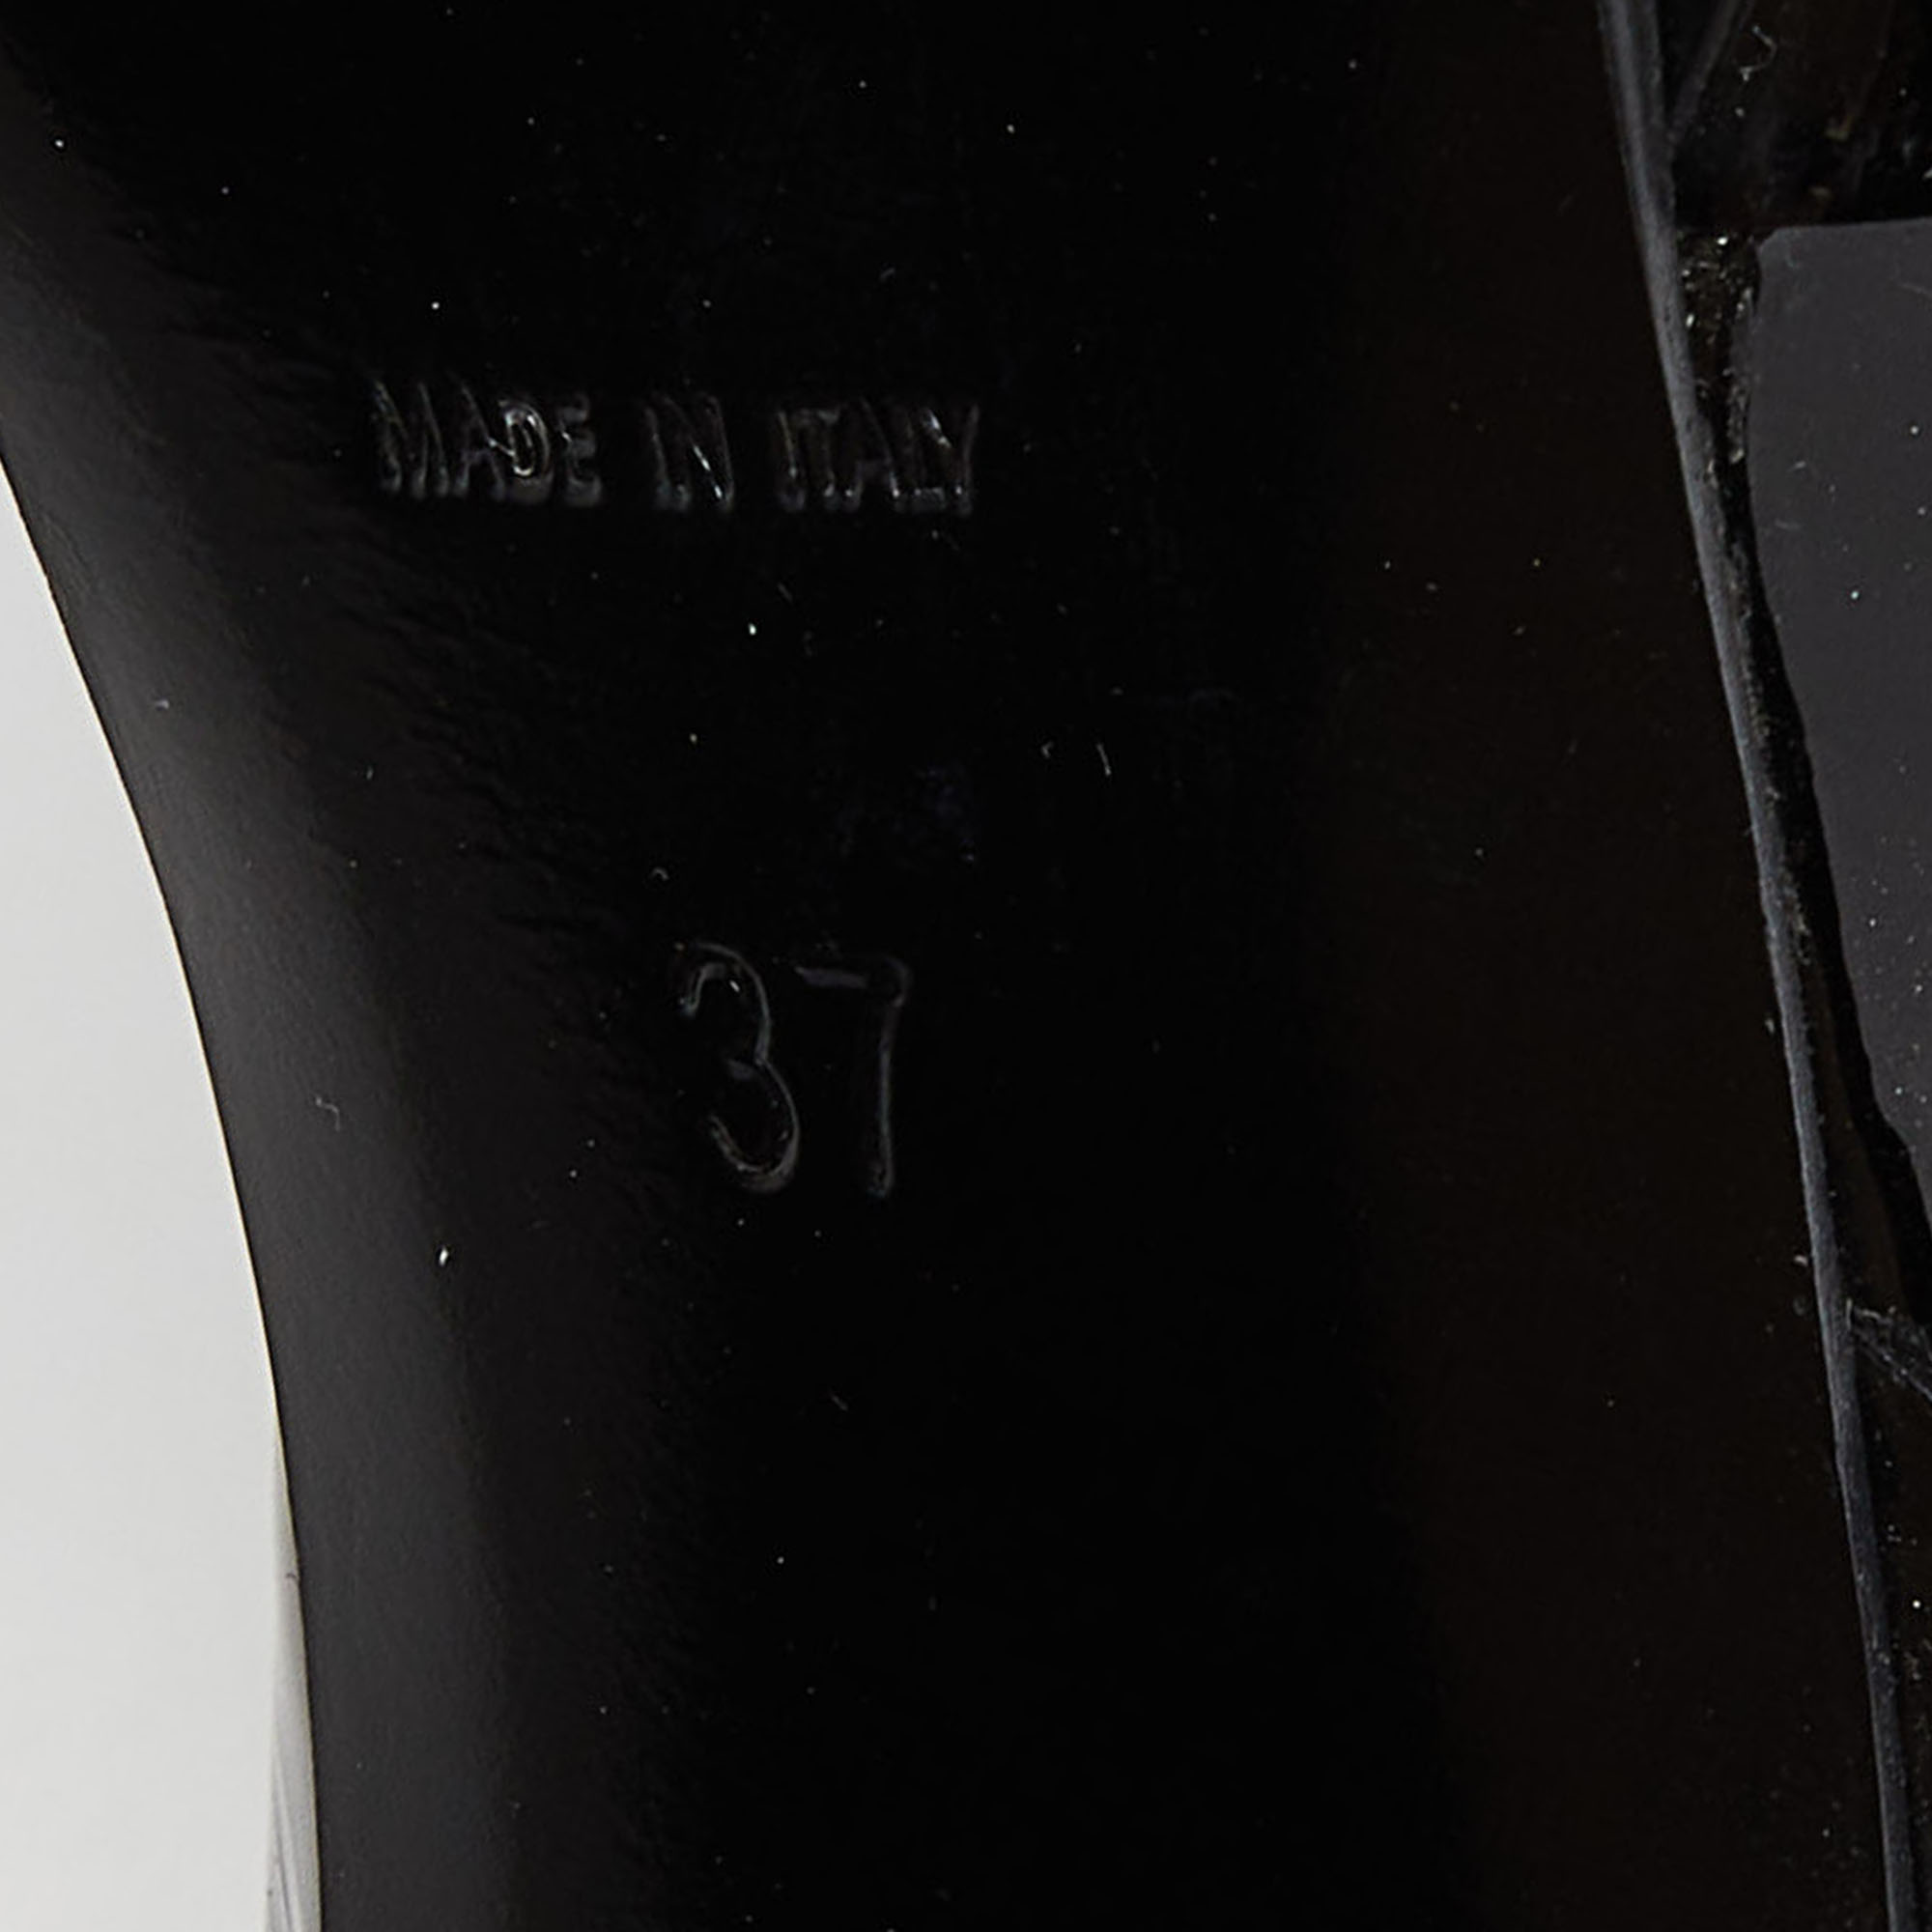 Saint Laurent Black Patent Leather Tribute Ankle Strap Sandals Size 37